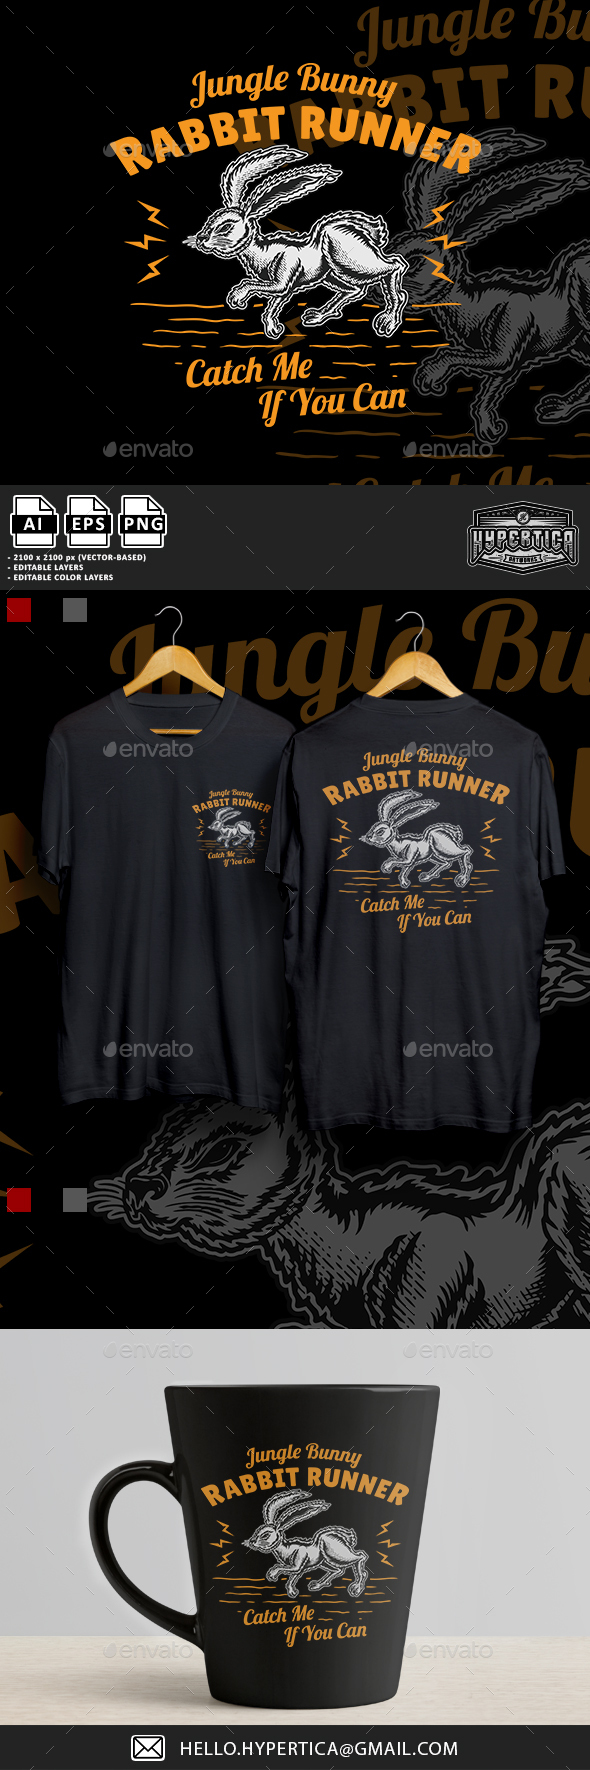 [DOWNLOAD]Vintage Rabbit Runner Illustration T-shirt Design